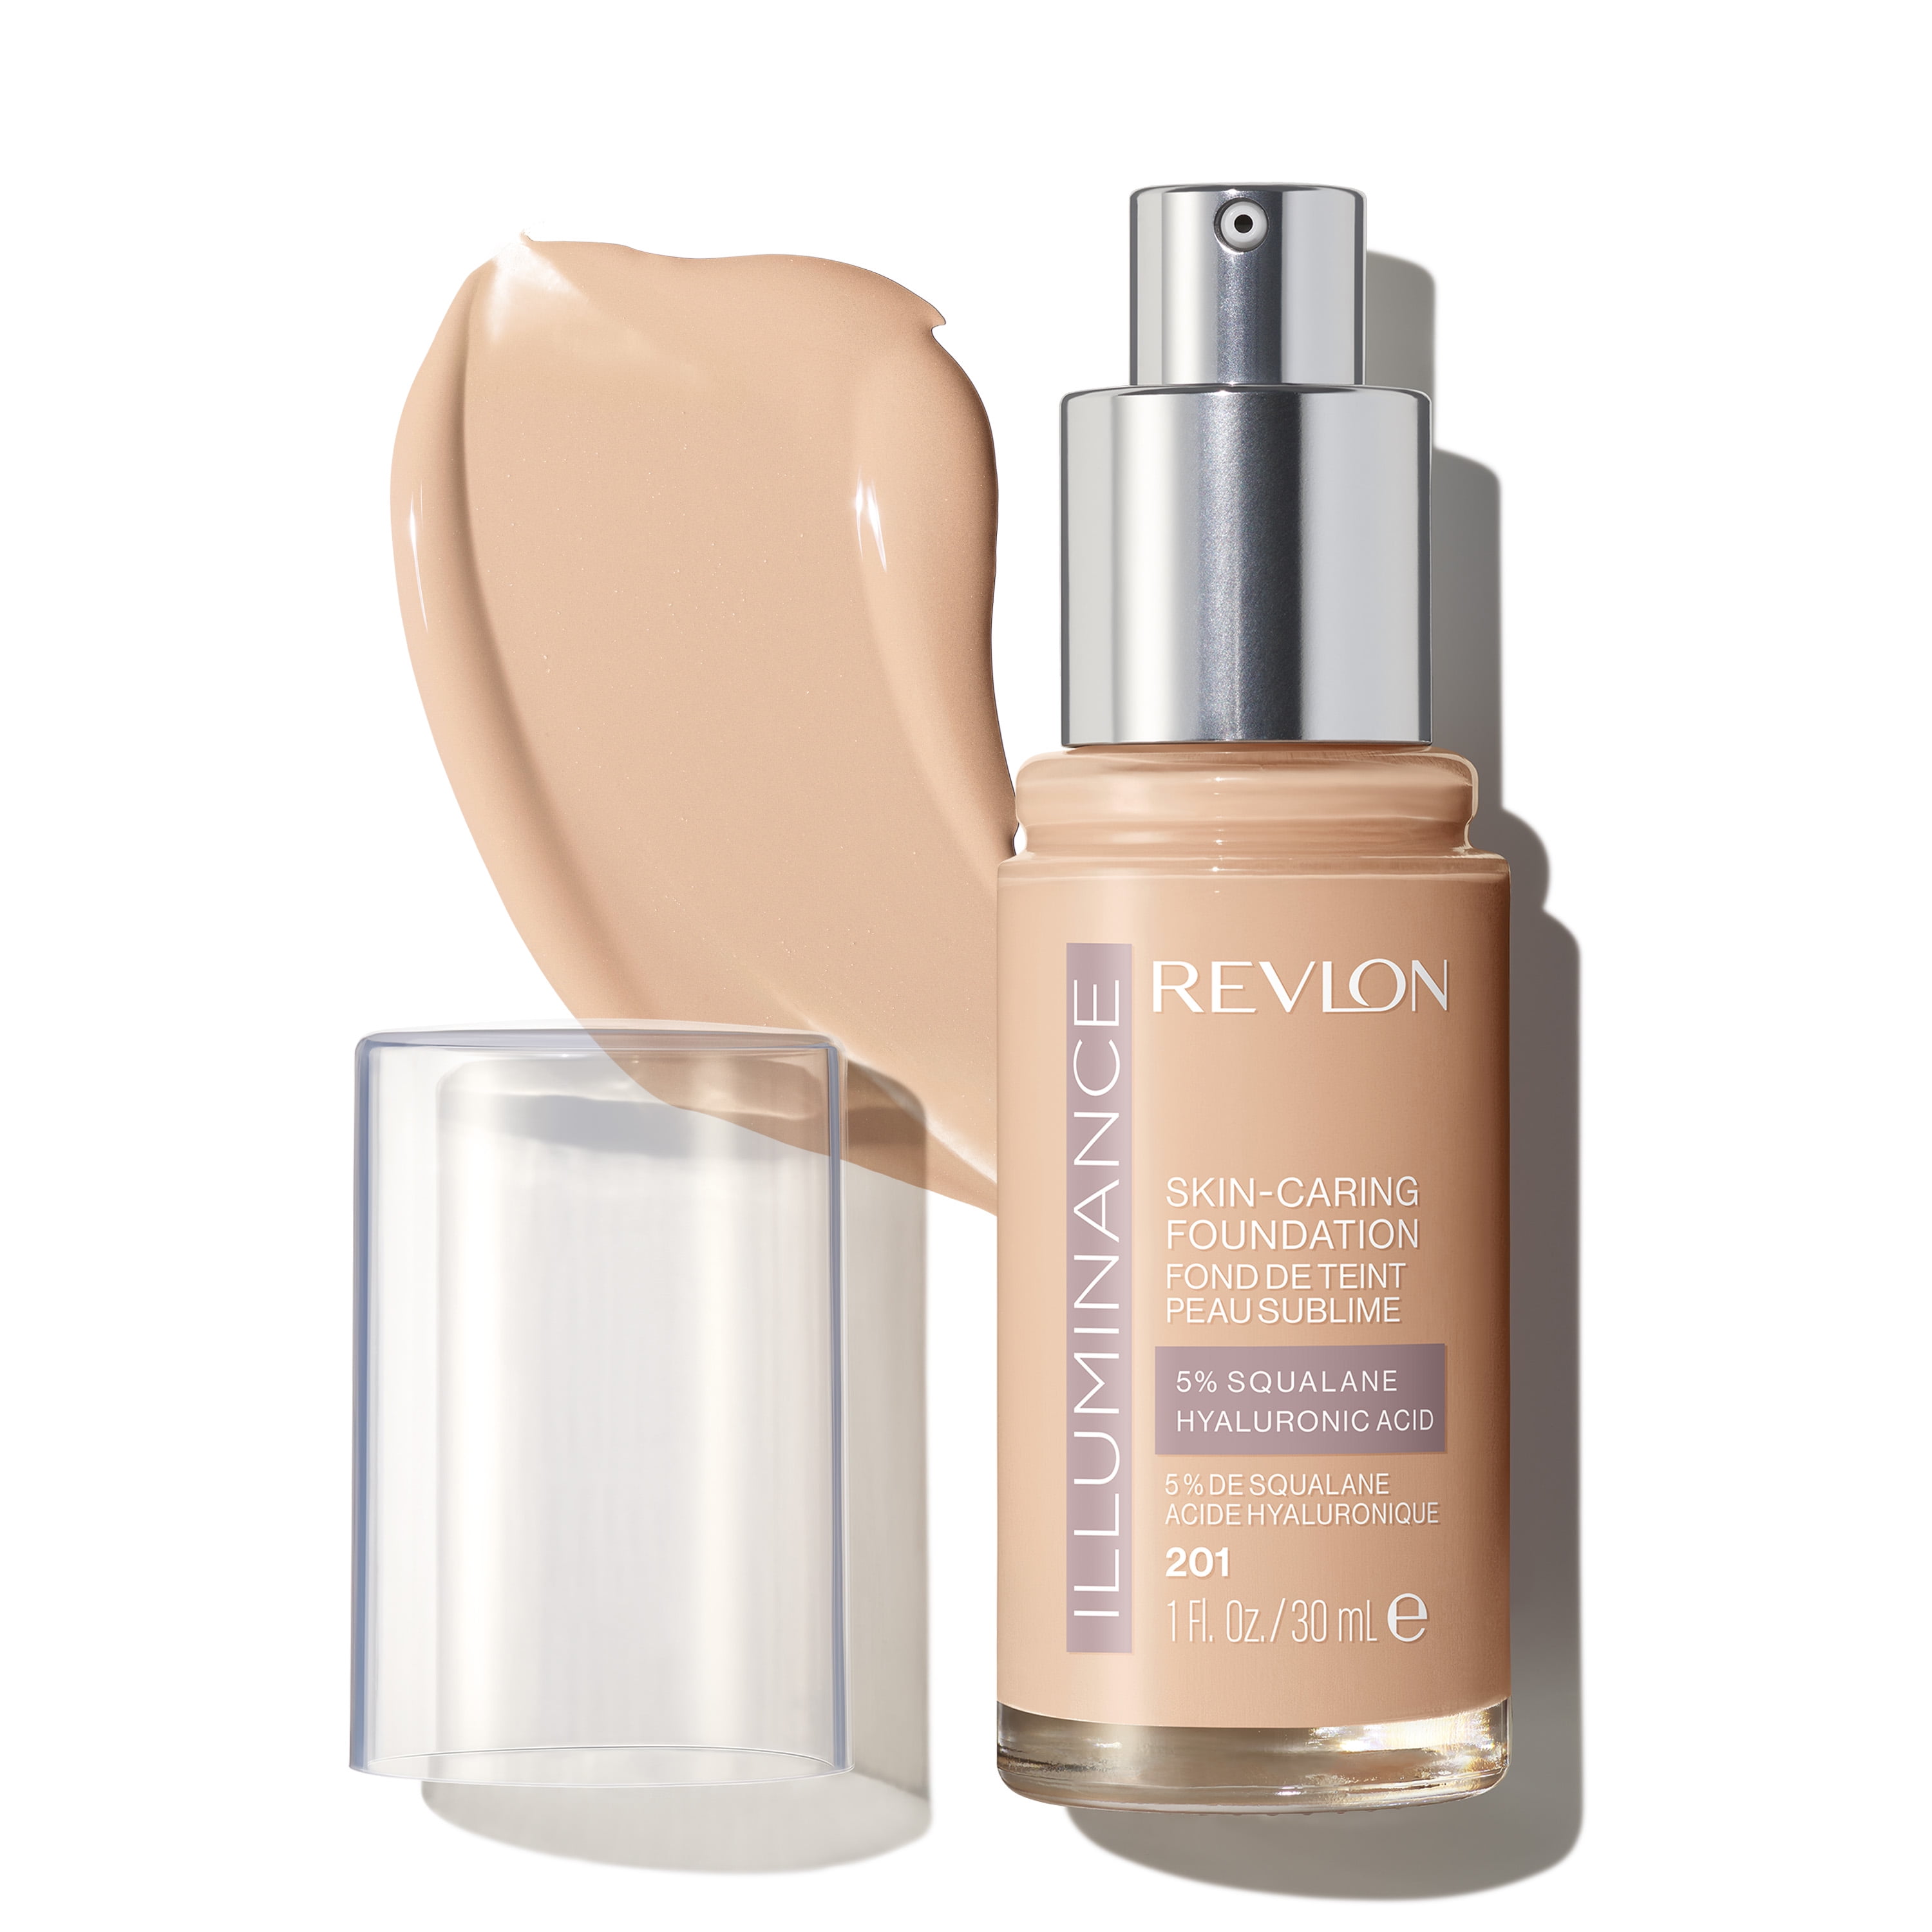 Revlon Illuminance Skin-Caring Liquid Foundation, Hyaluronic Acid, Hydrating and Nourishing Formula with Medium Coverage, 201 Creamy Natural, 1 fl oz.